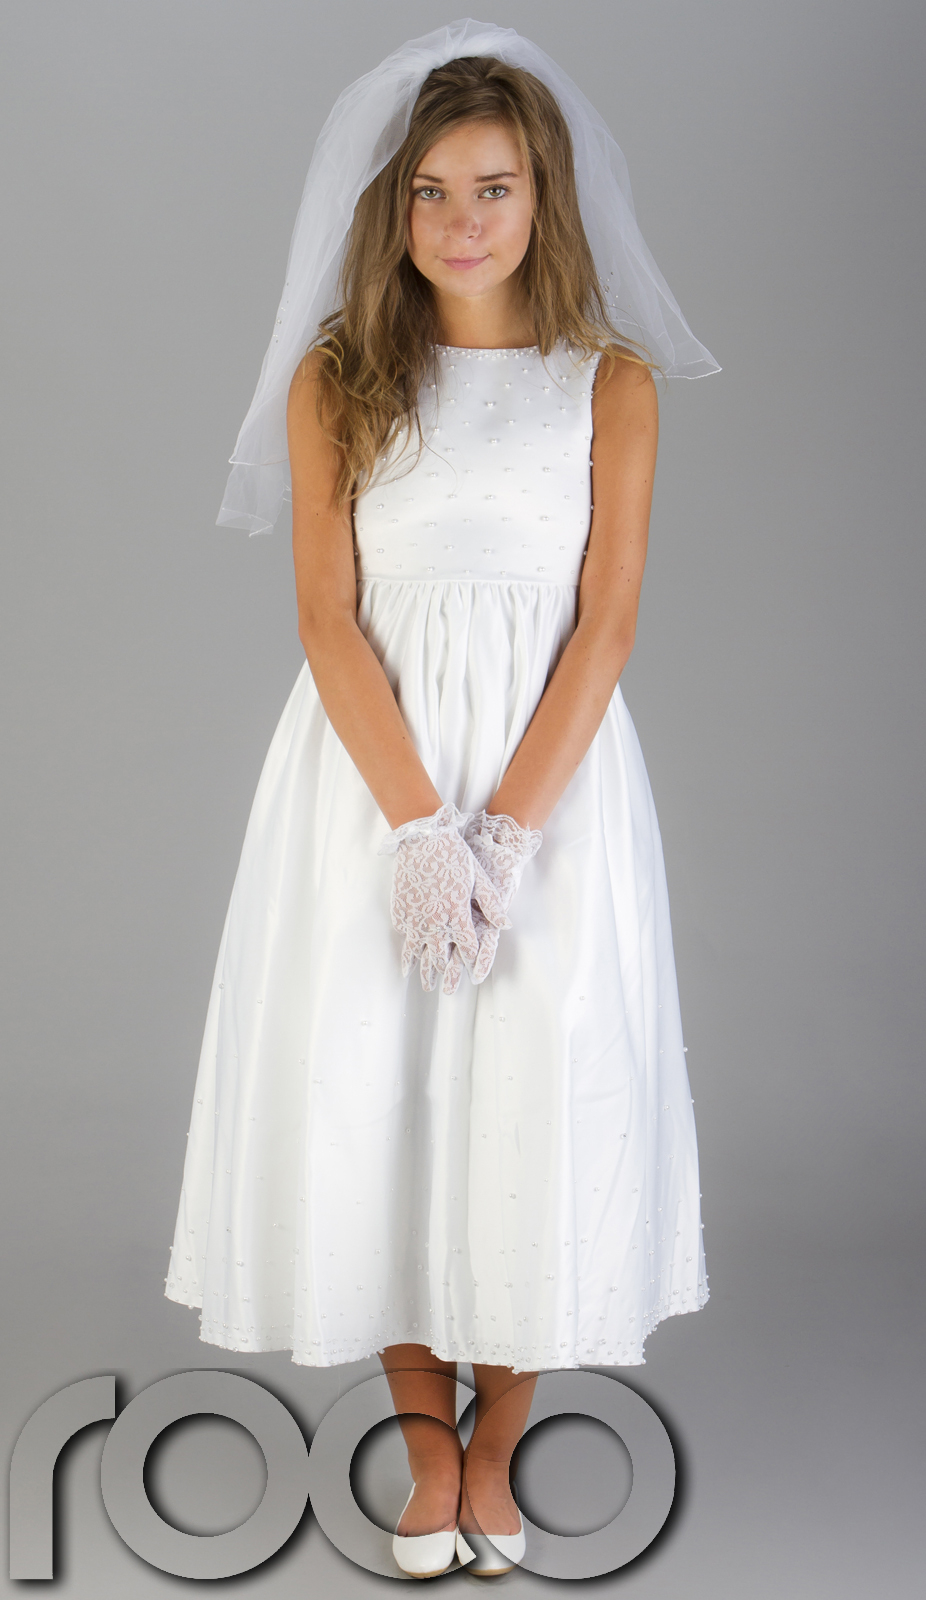 Idéé Et Photo Décoration Mariage: Petite Robe Blanche tout Images Pour Filles 